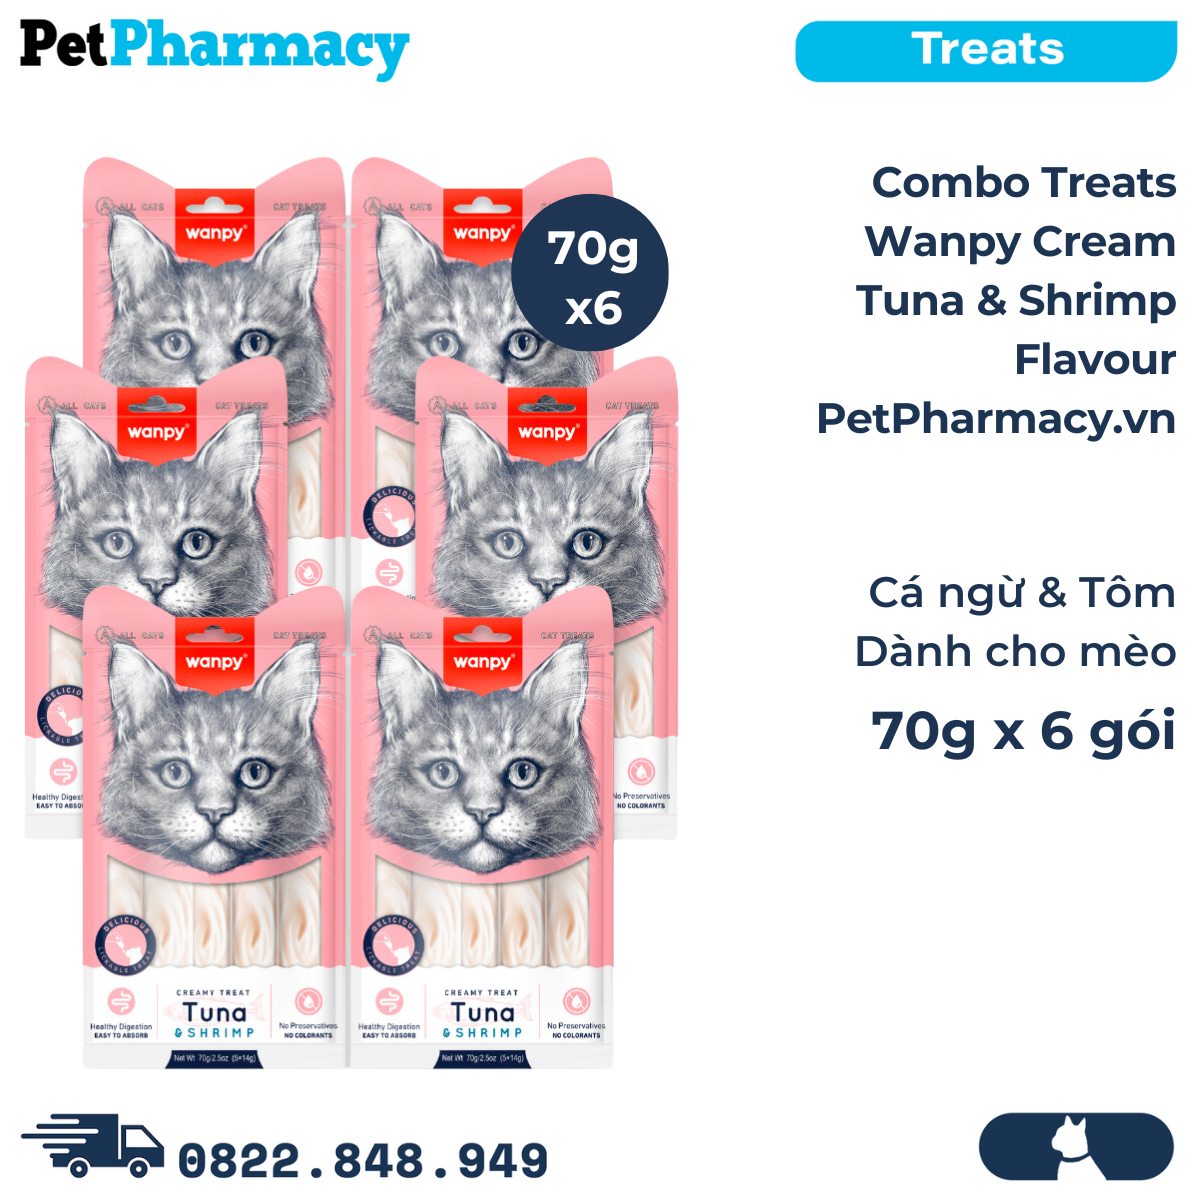  Combo Treats WANPY Cream Tuna & Shrimp 70g - 6 gói - Cá ngừ và tôm dành cho Mèo 